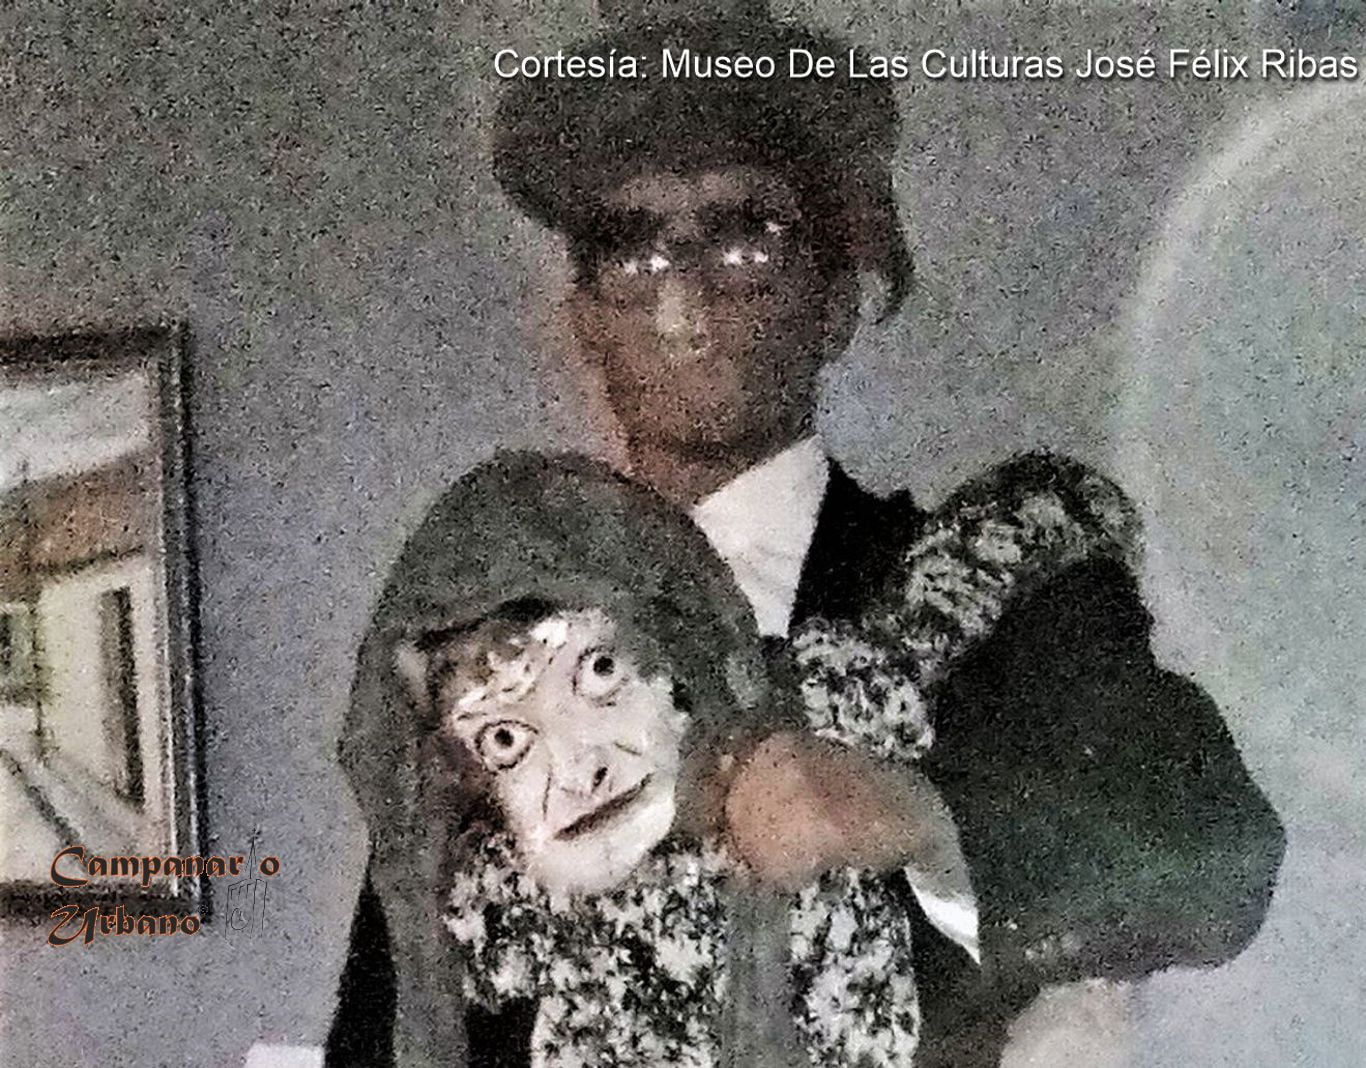 "La Viejita de Guarenas", manifestación cultural y diversión popular creada por el cultor Miguel Parra. Traje y máscara originales usados por Miguel Parra. Expuestos desde febrero de 2019 en el salón Huerenas del Museo De Las Culturas José Félix Ribas